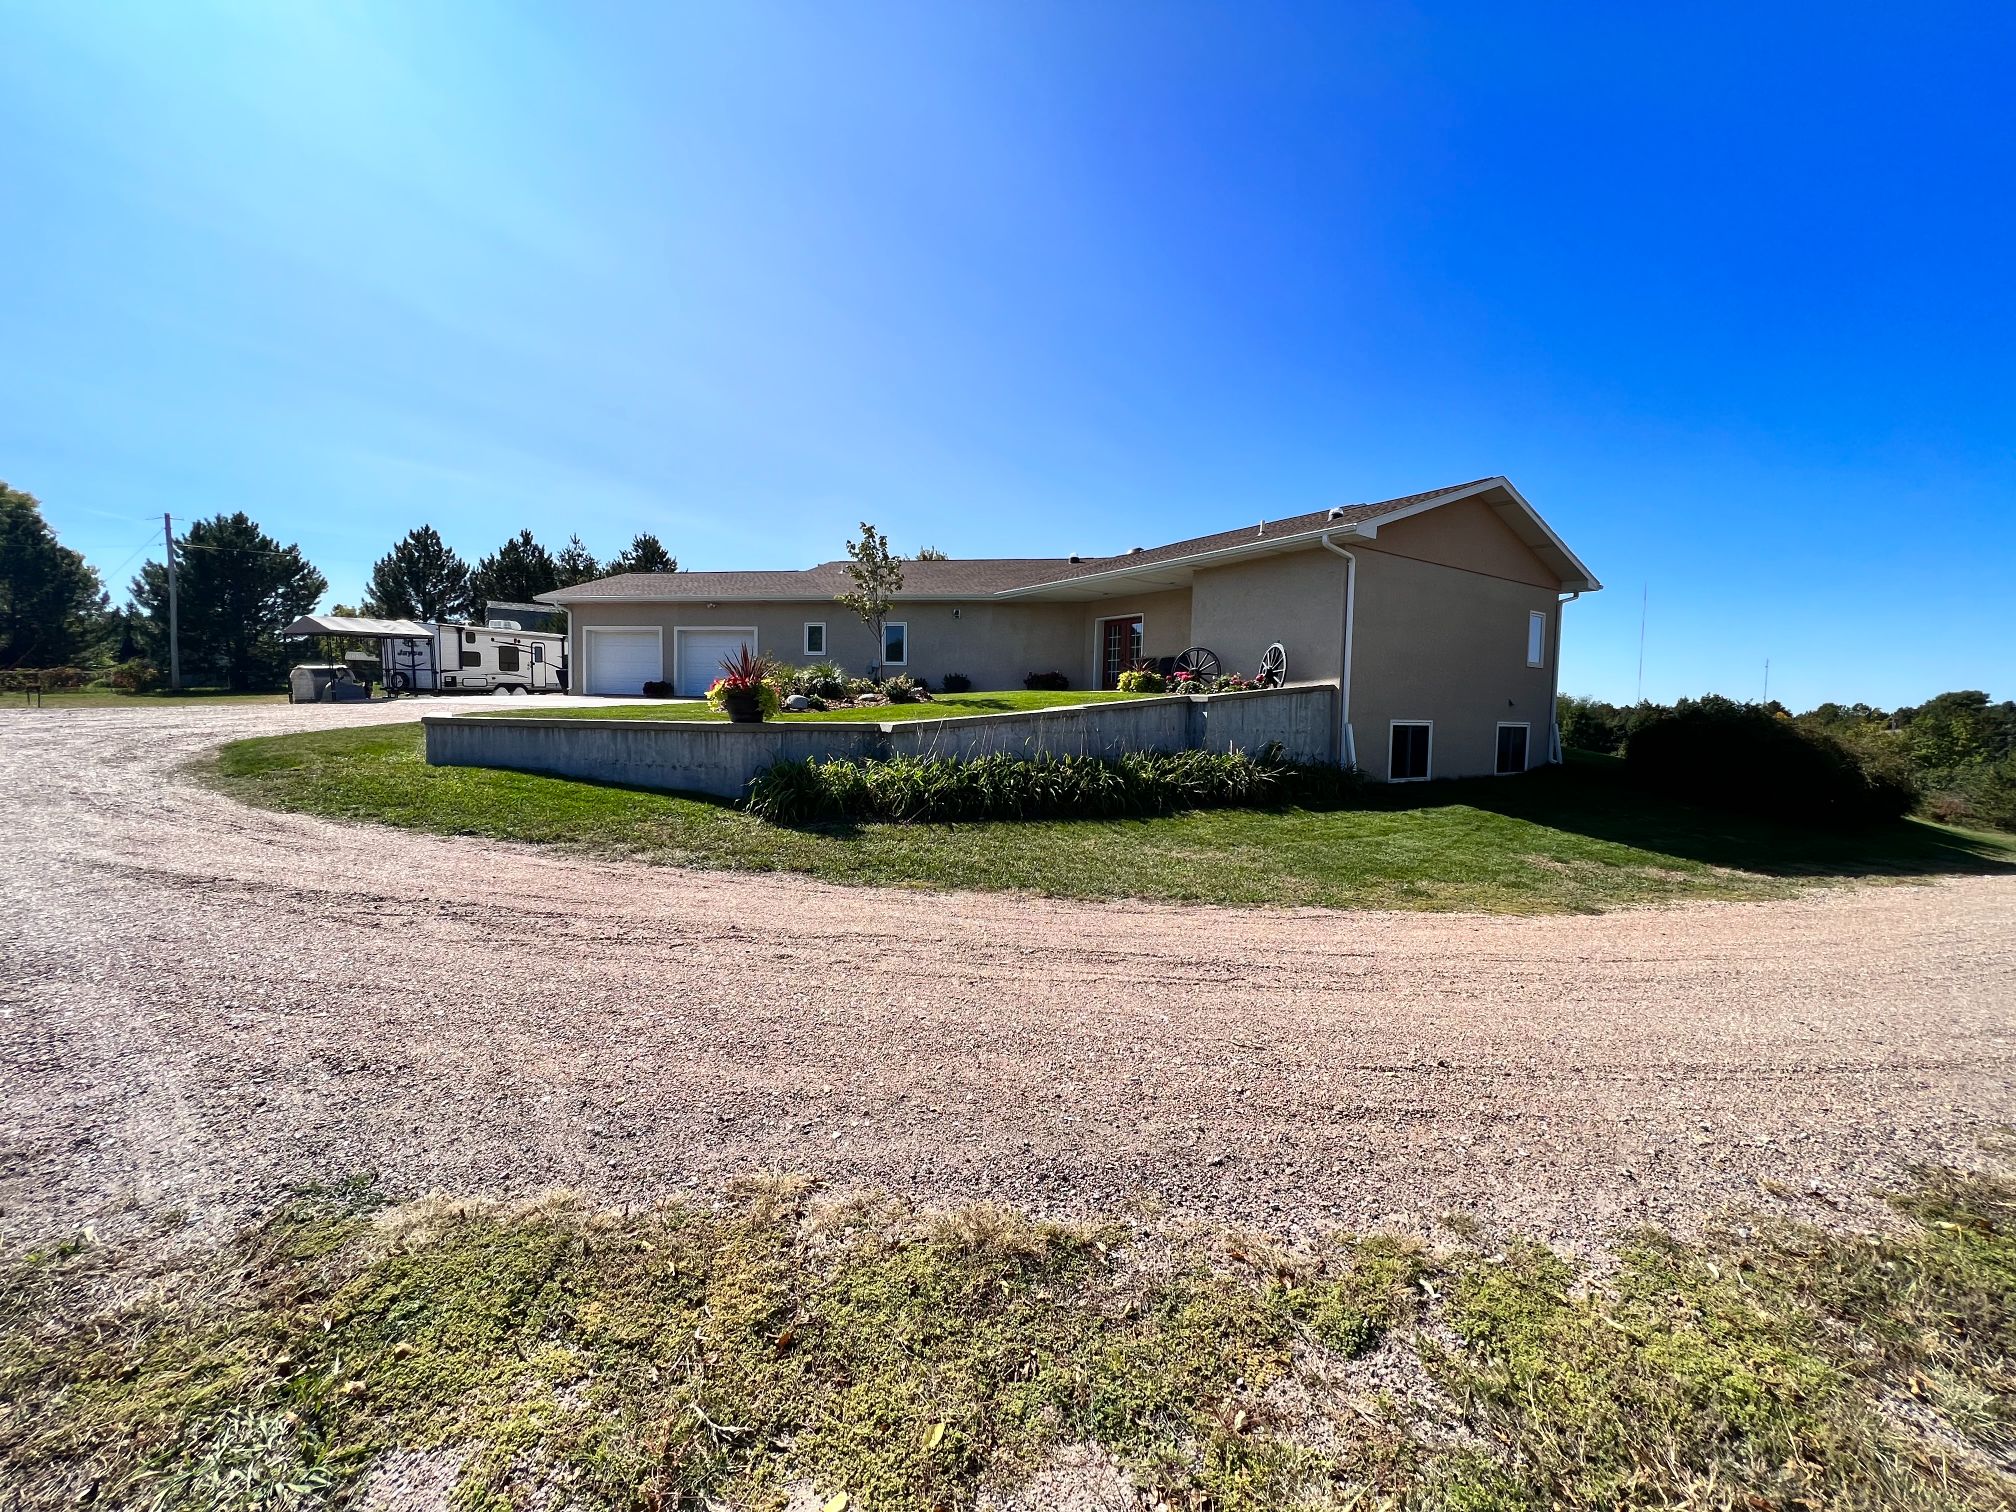 Home and land for sale North Platte, Nebraska